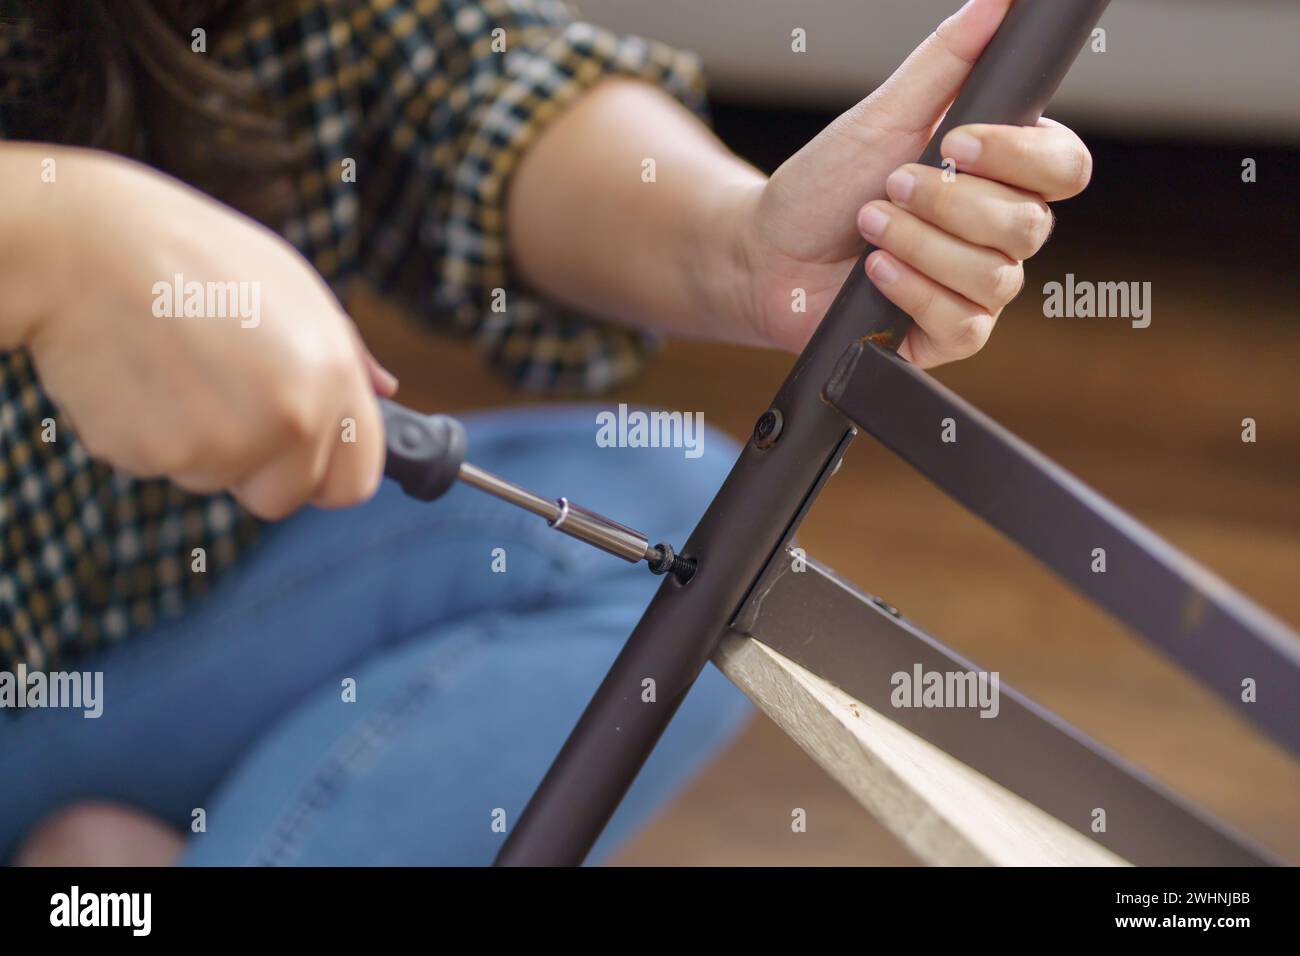 La donna asiatica ripara autonomamente i mobili rinnovati utilizzando attrezzature per riparare i mobili da casa, seduti sul pavimento Foto Stock